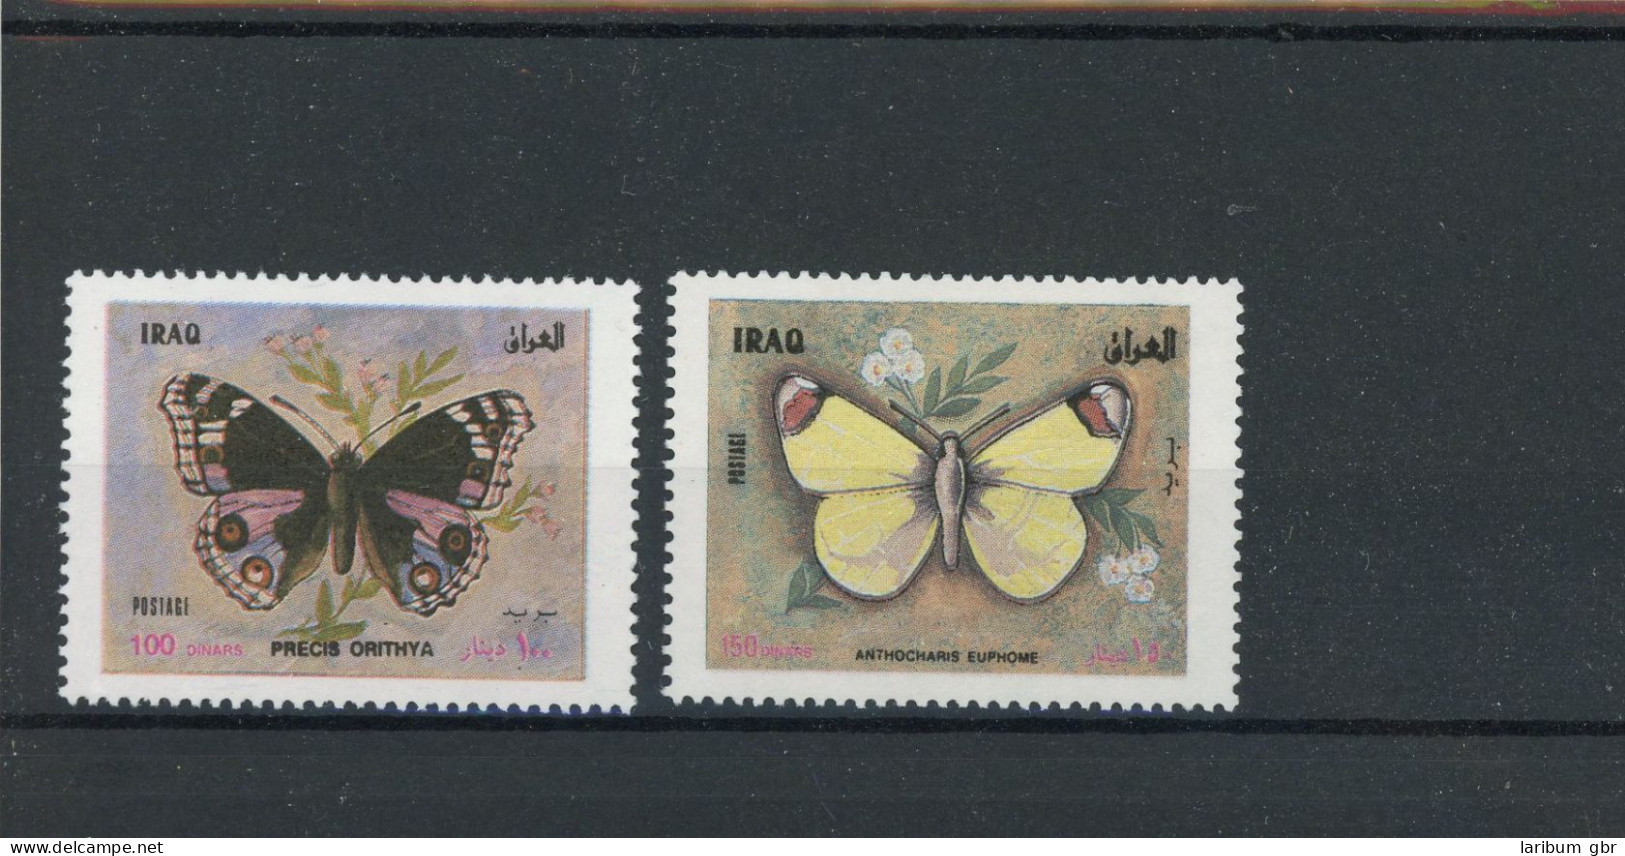 Irak 1590-1591 Postfrisch Schmetterling #GK024 - Iraq